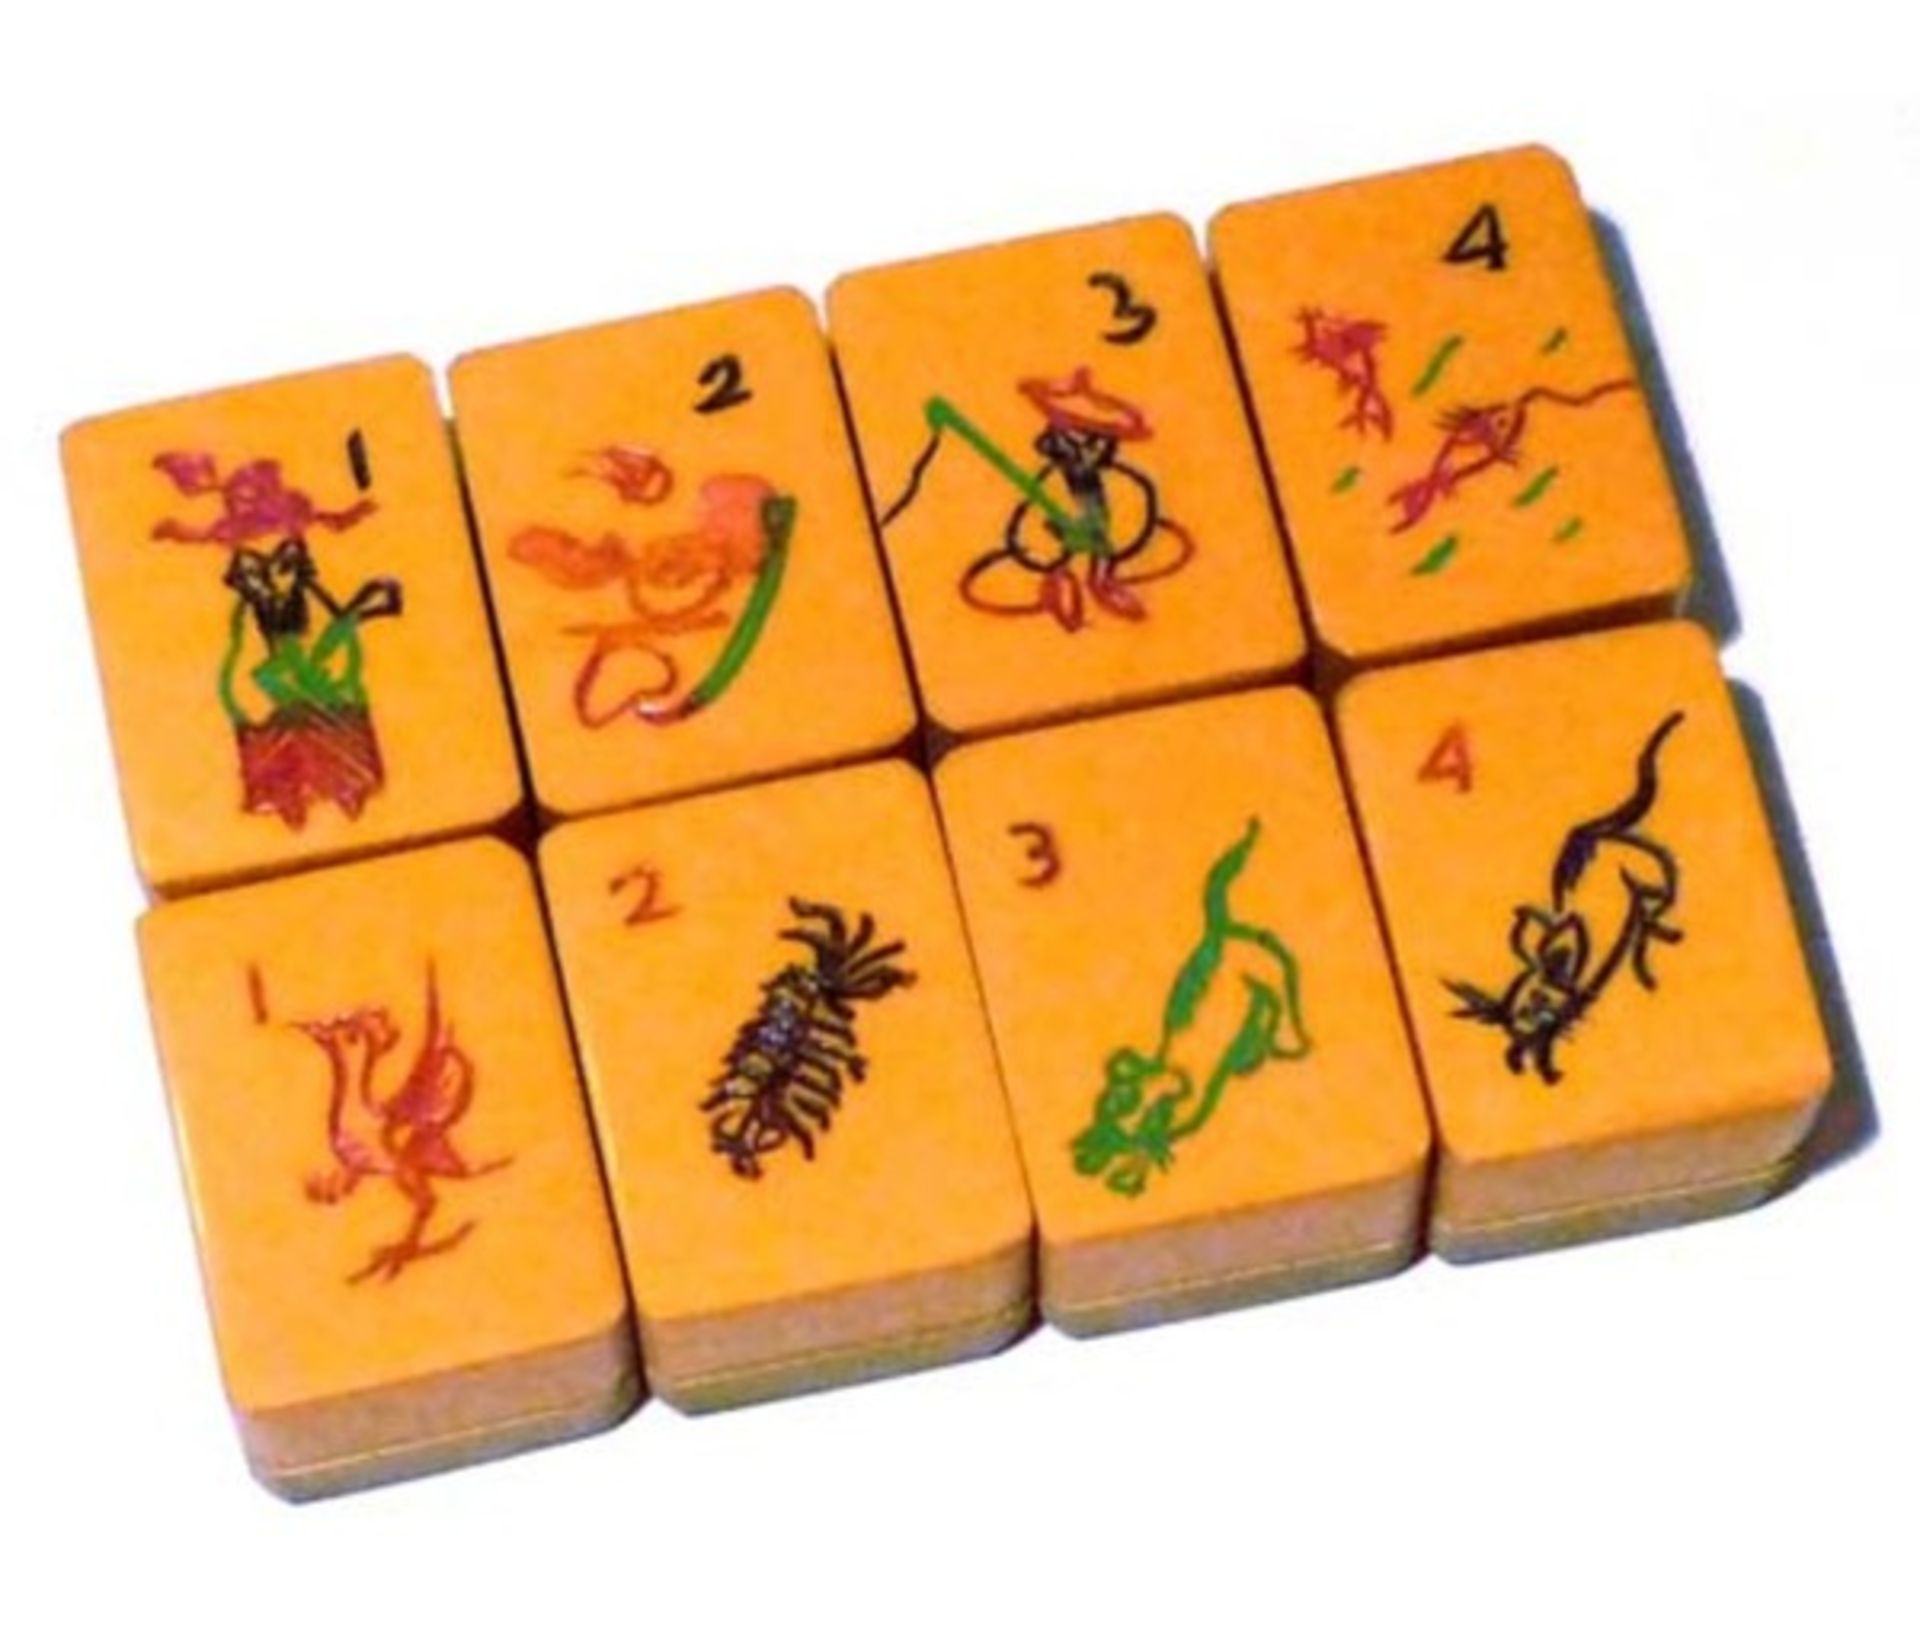 (Mahjong) Mahjong kunststof, stenen van kunststof en bamboe, ca. 1935 - Bild 12 aus 13